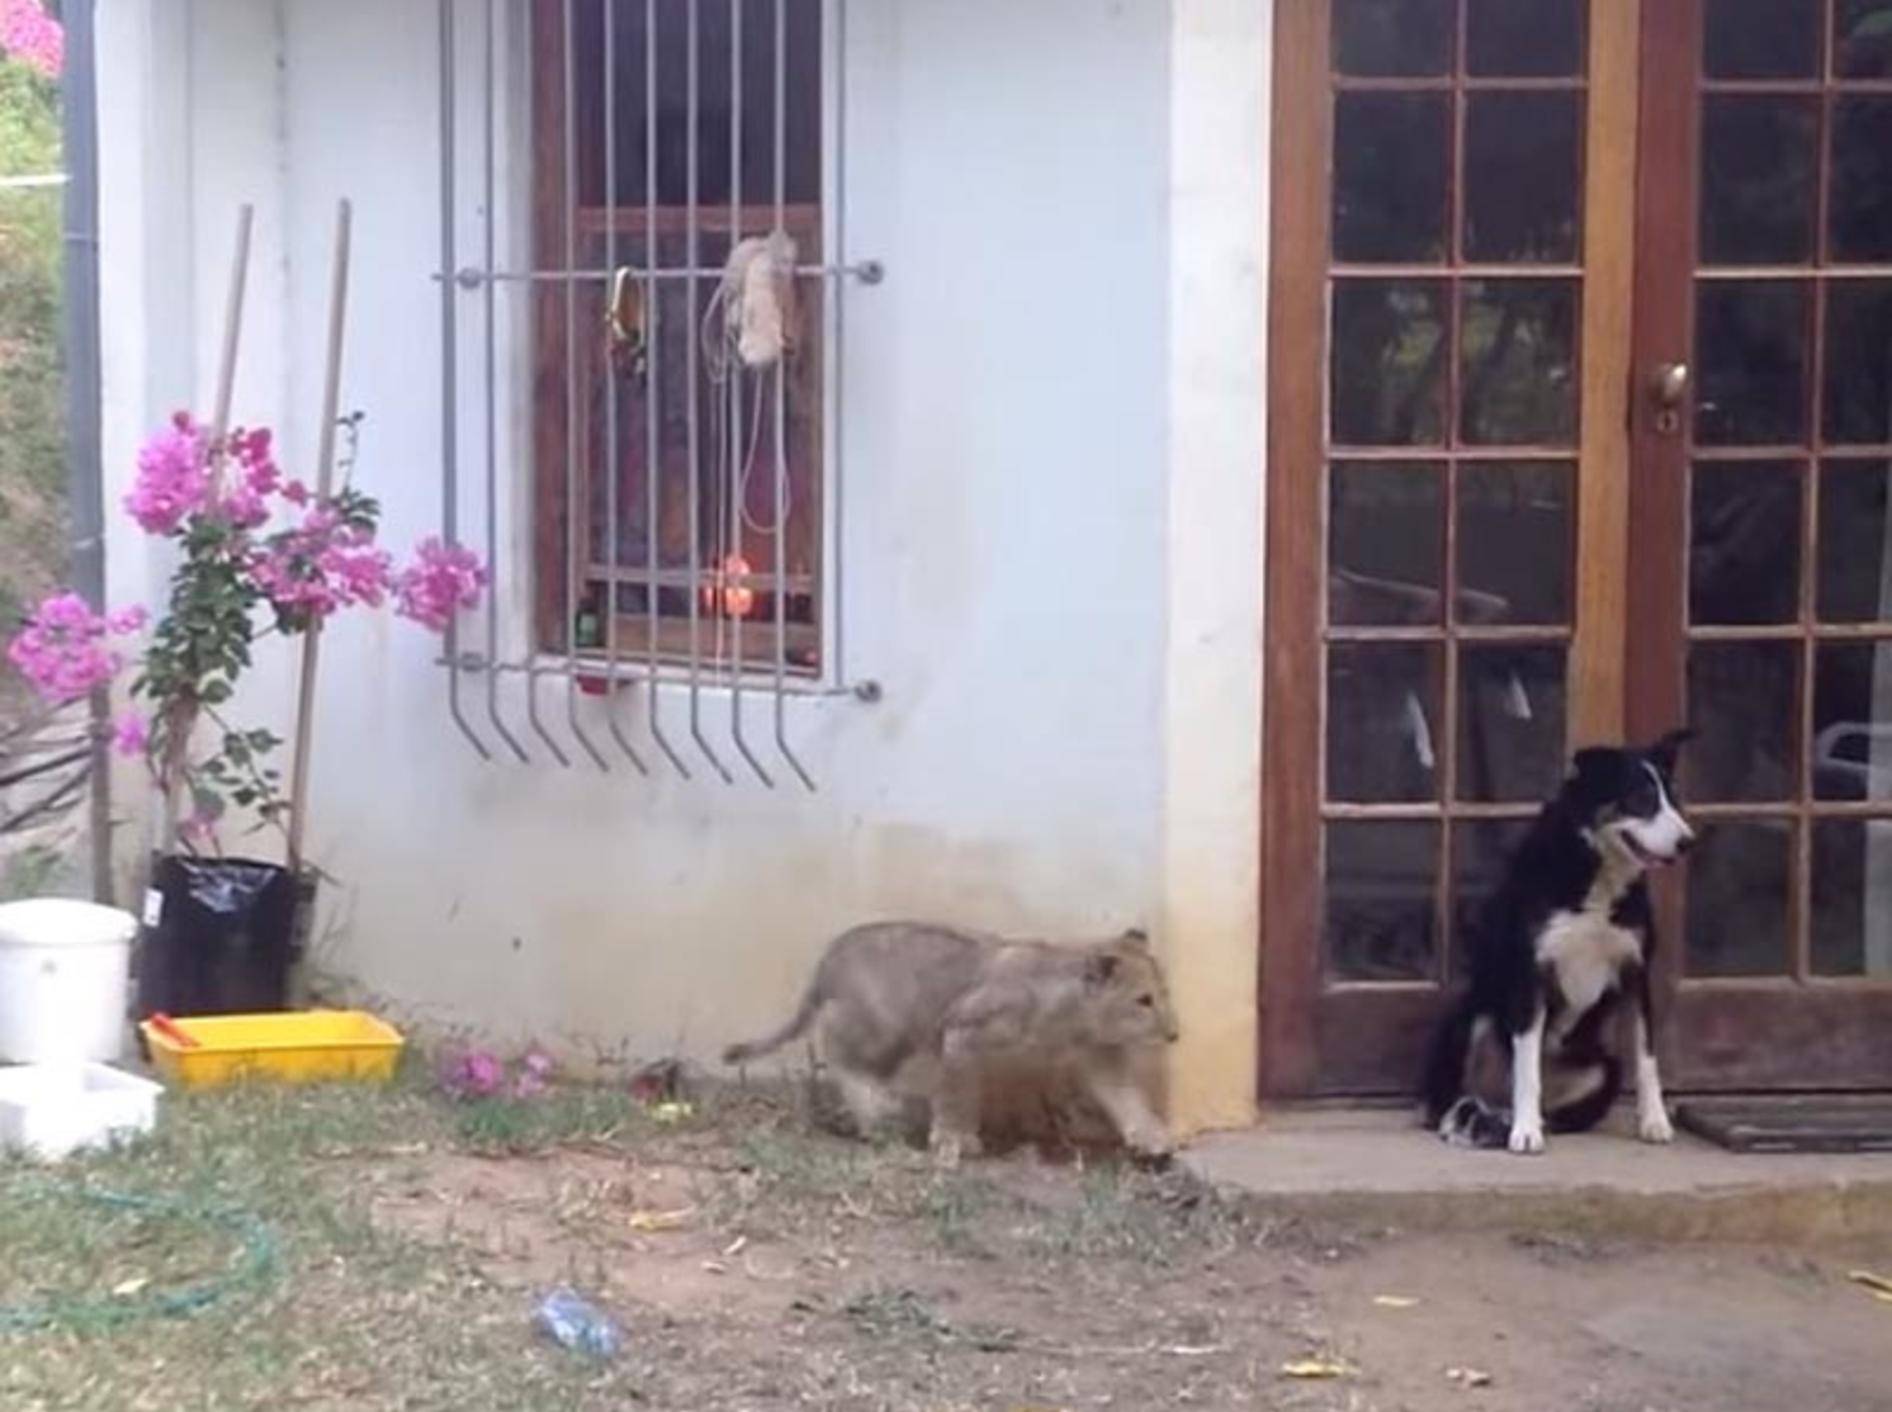 Verspieltes Löwenbaby erschreckt Hunde – Bild: Youtube / Shaun Swingler